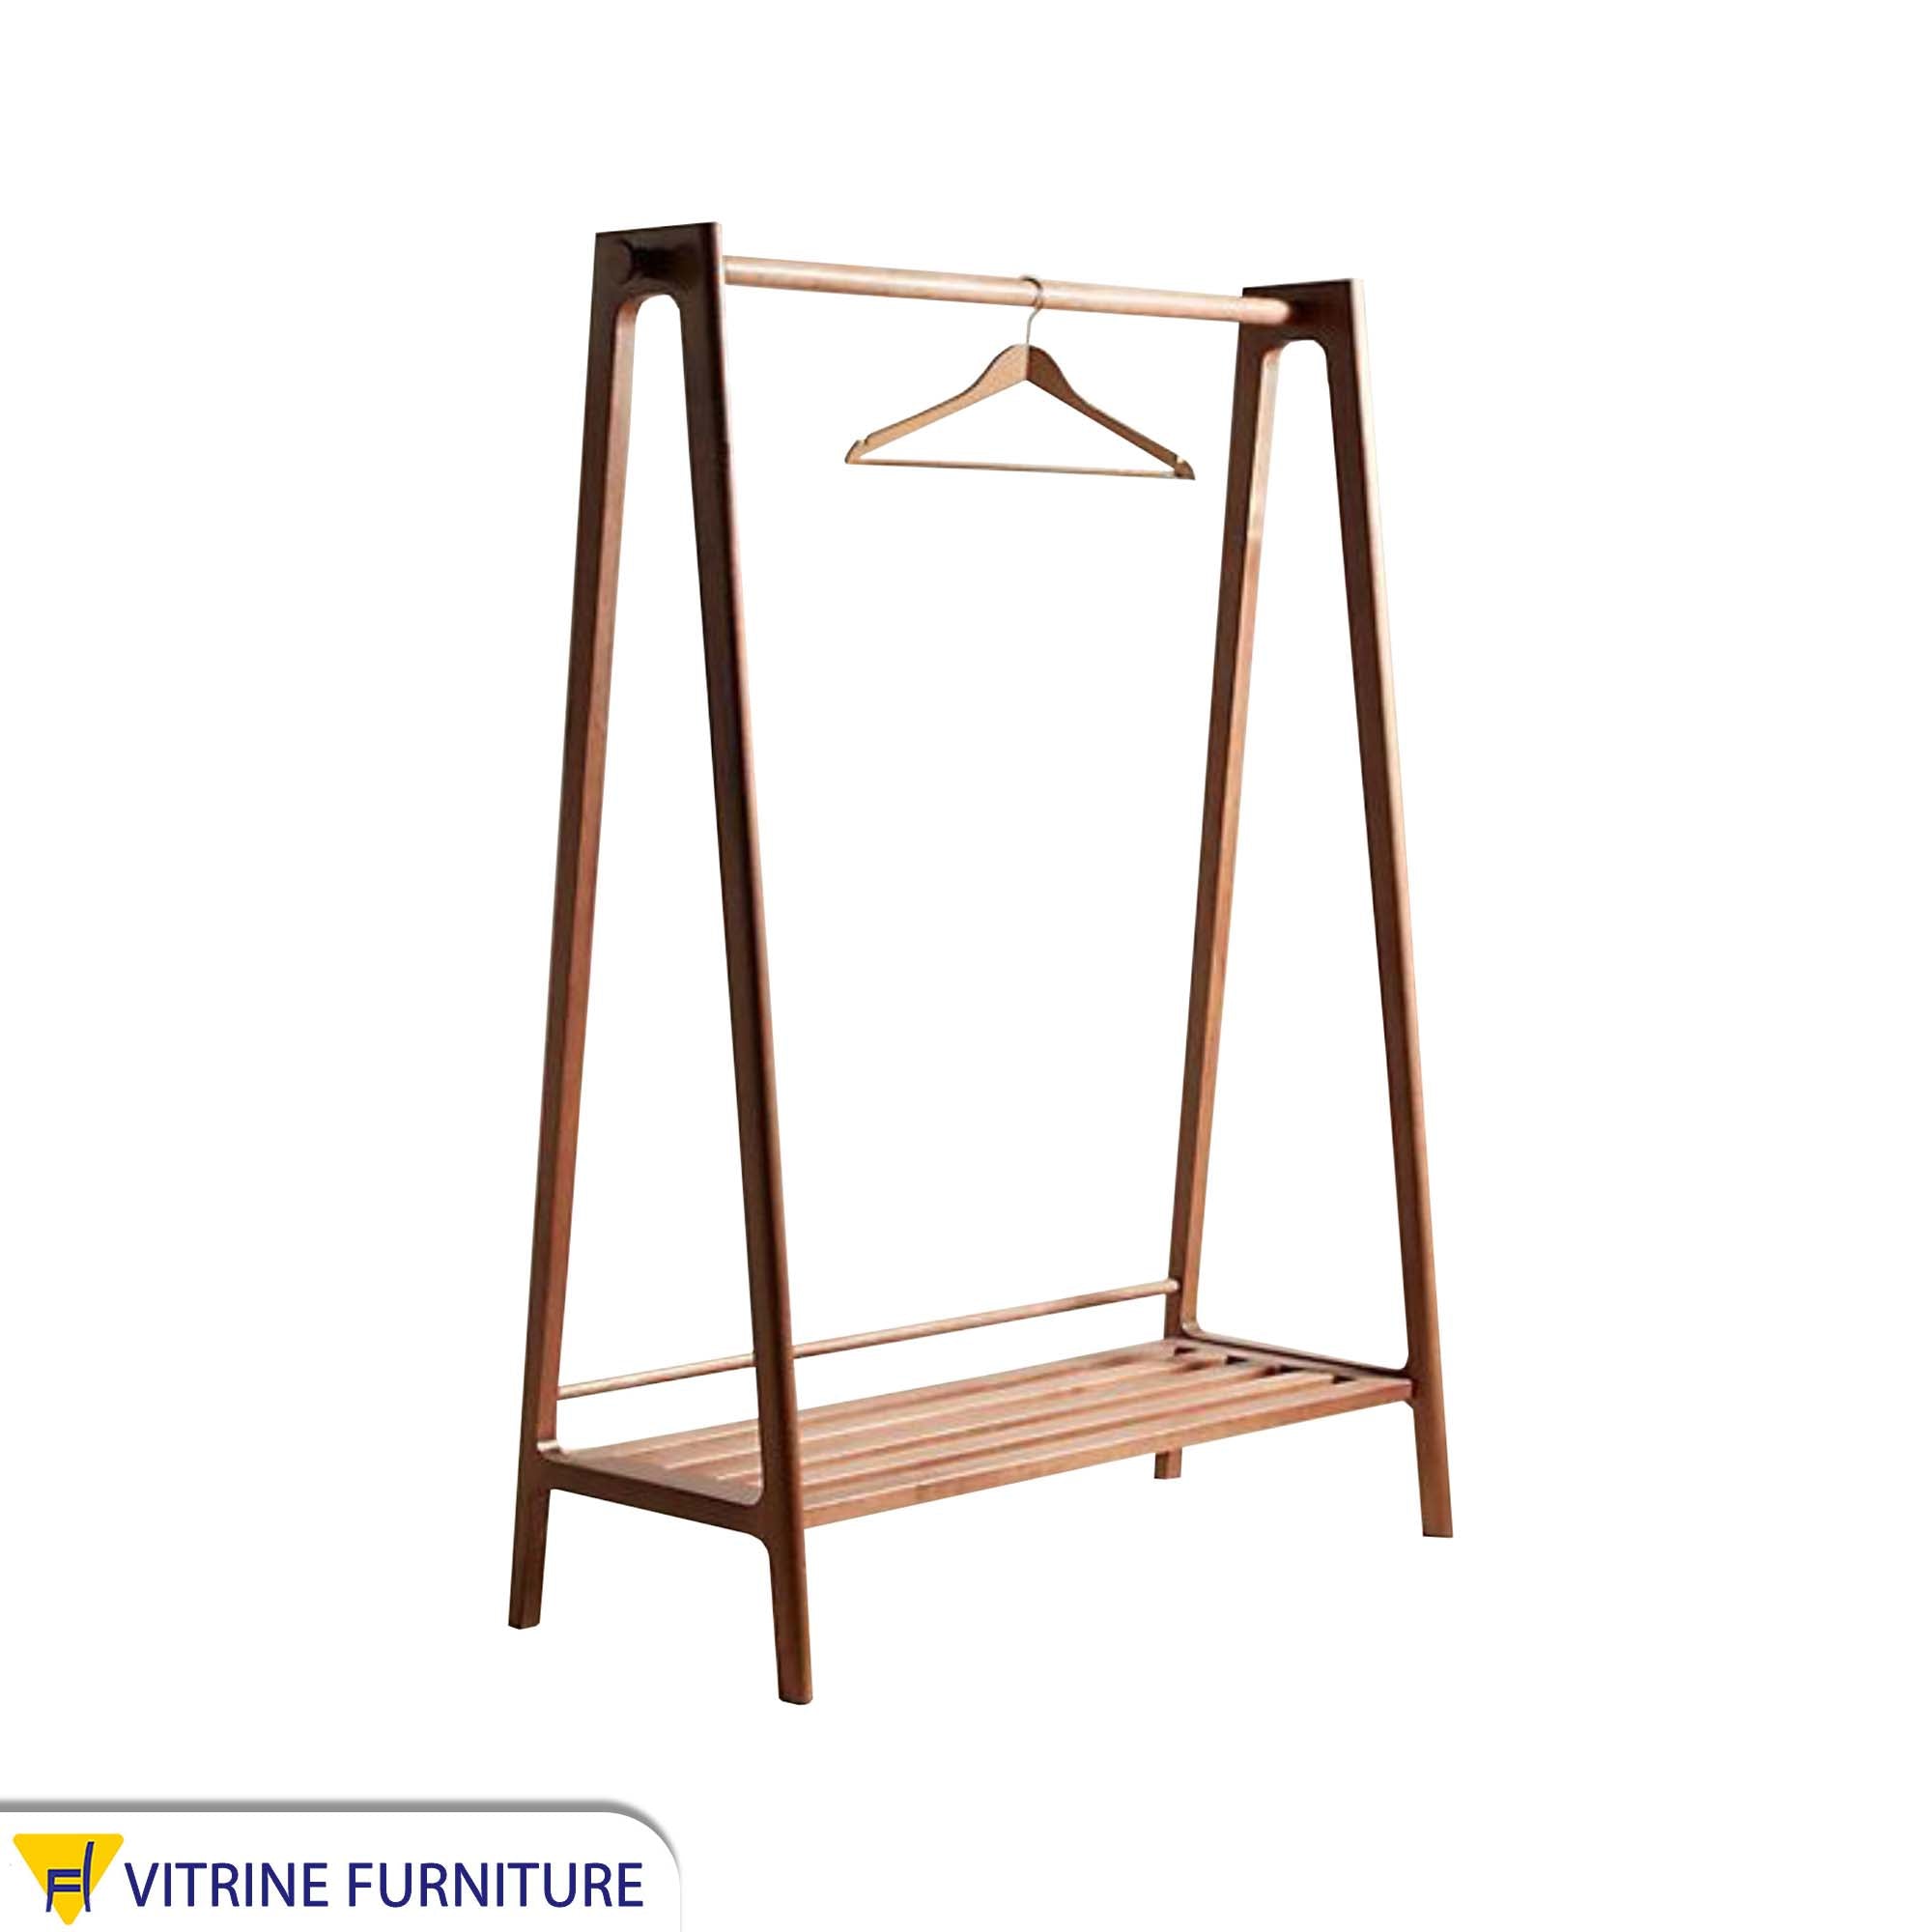 Distinctive wooden stand hanger